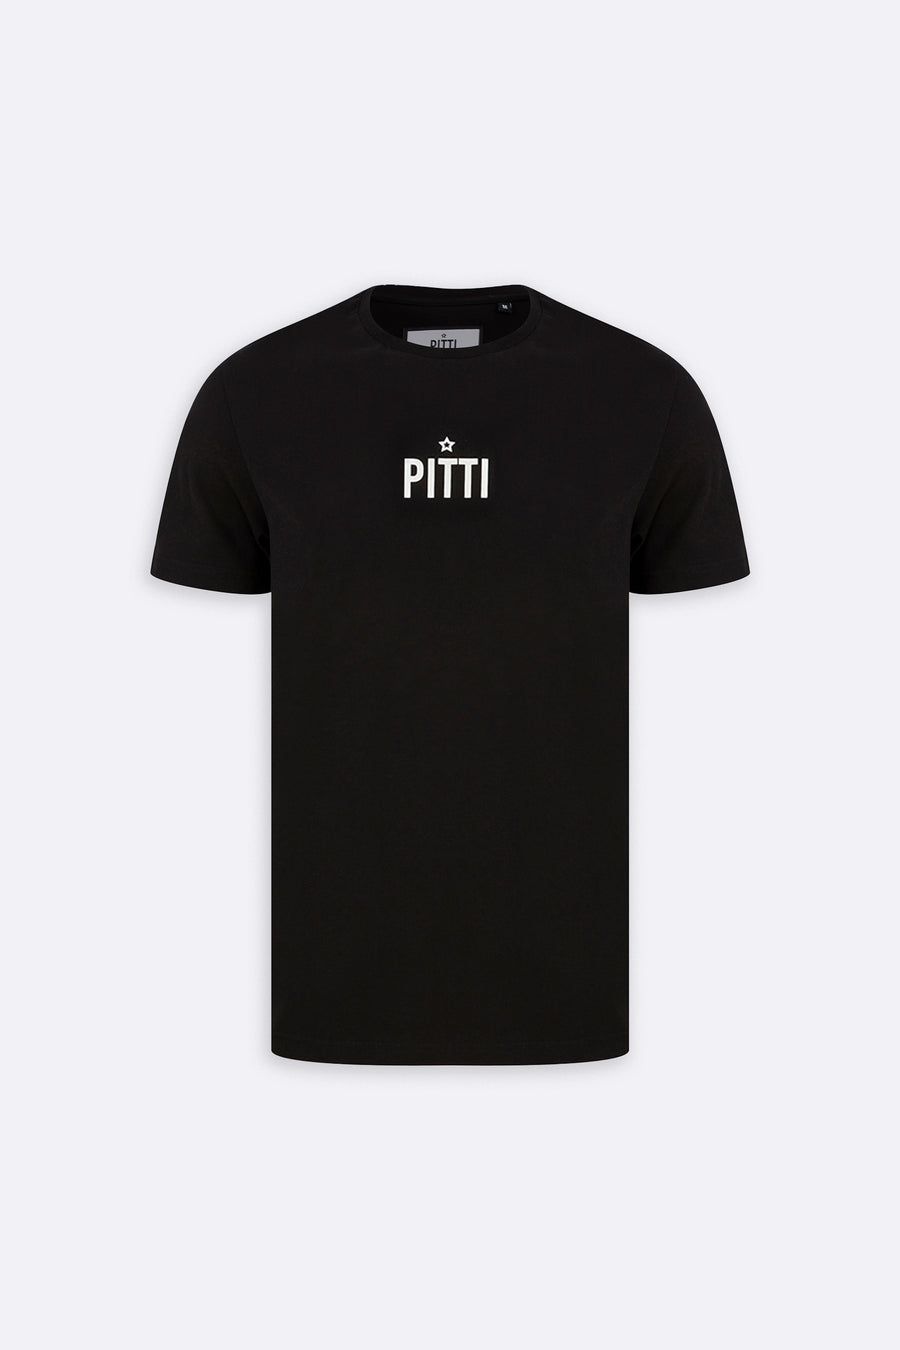 PITTI TEE (BLACK)